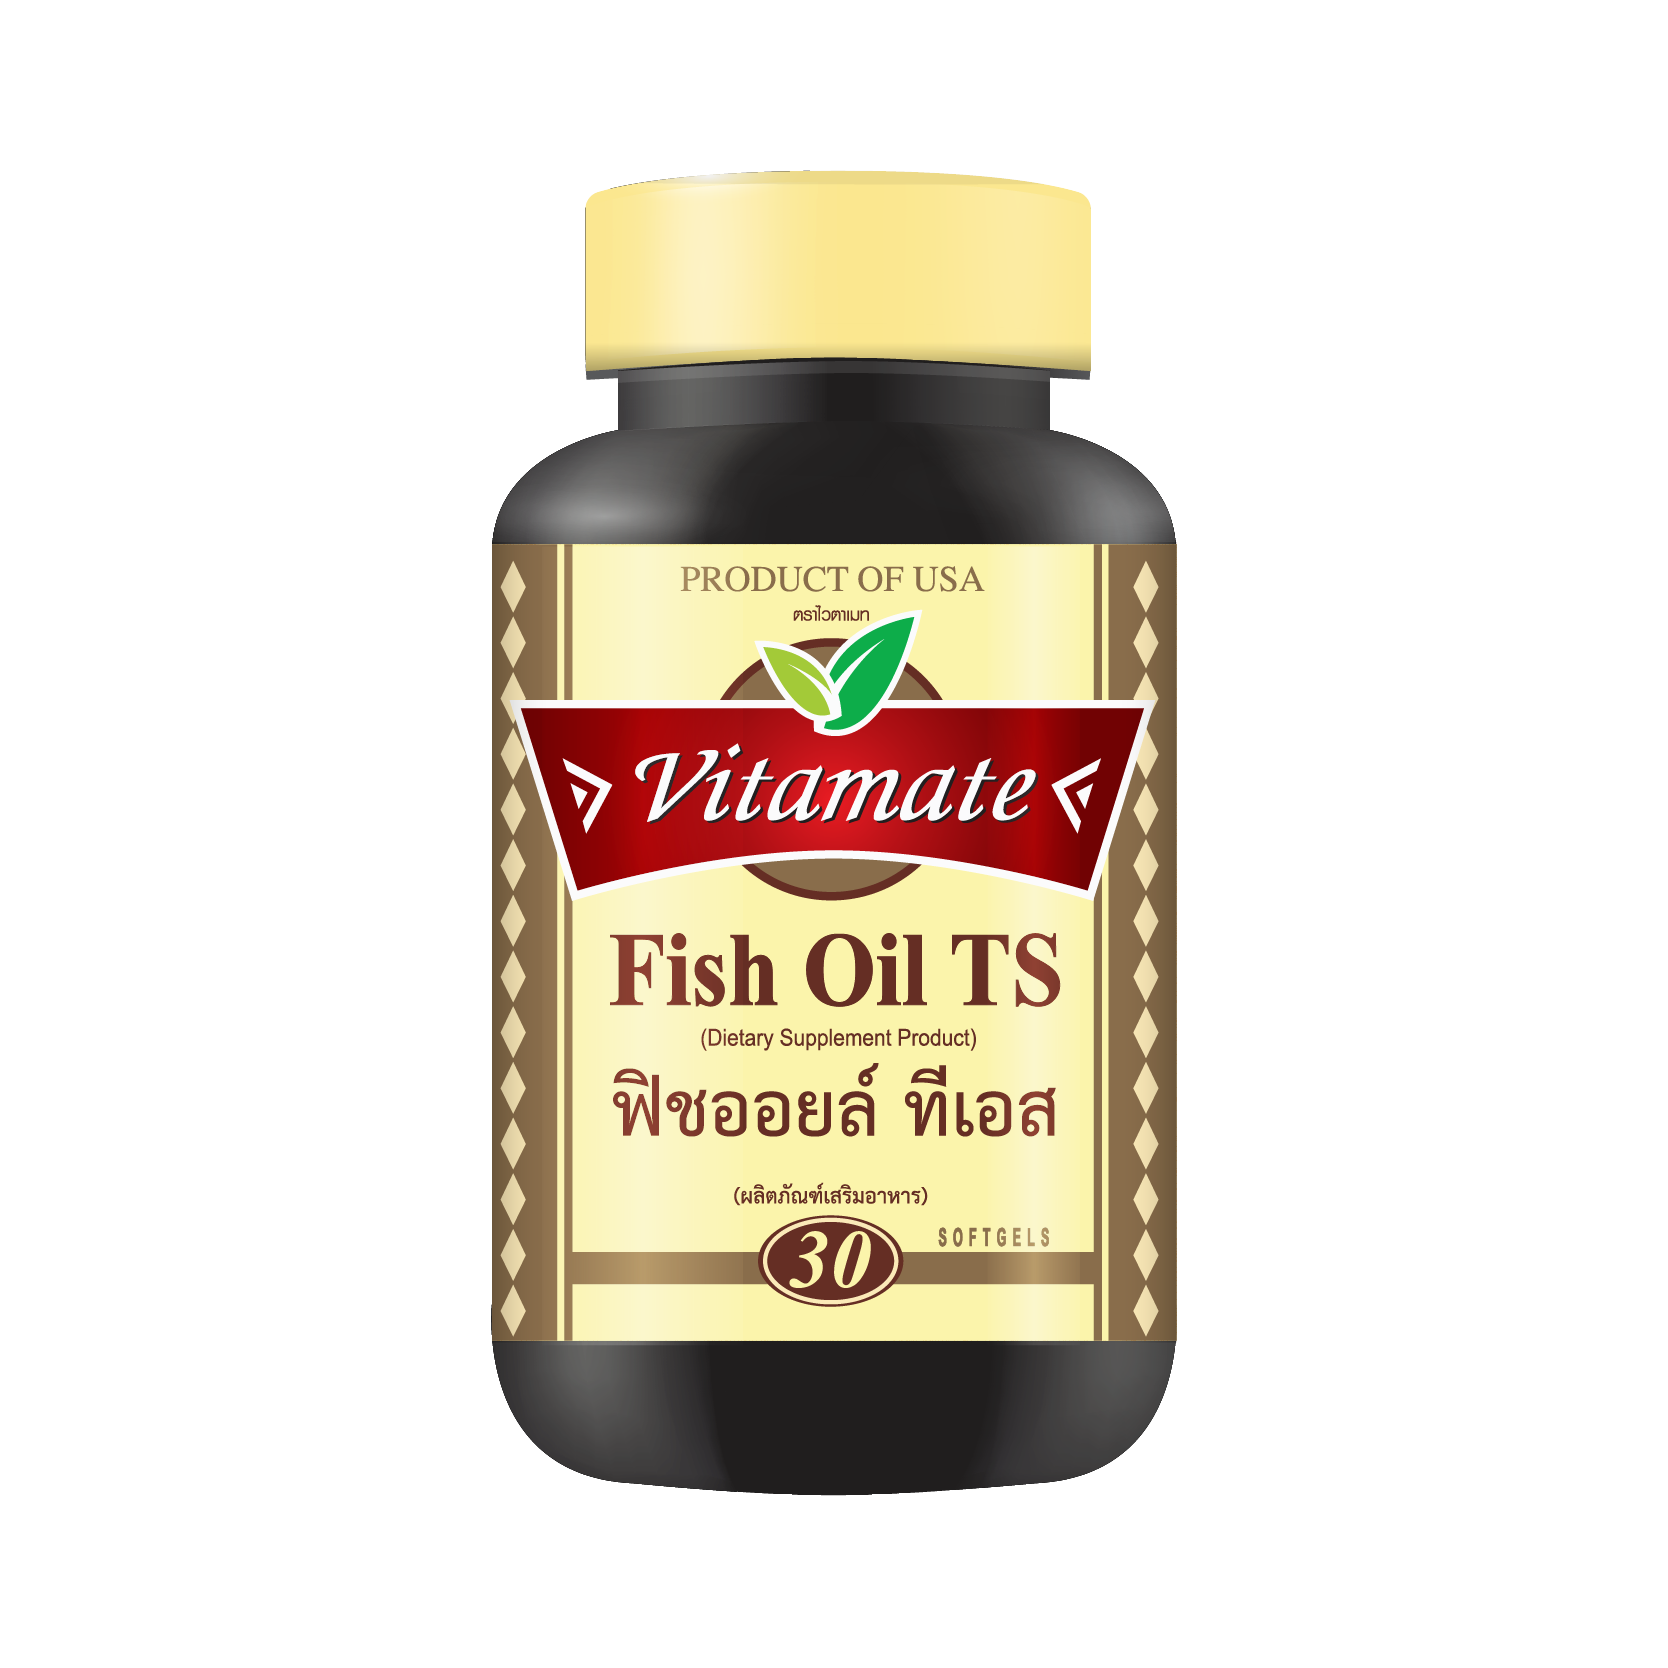 Vitamate Fish oil TS 30 softgels